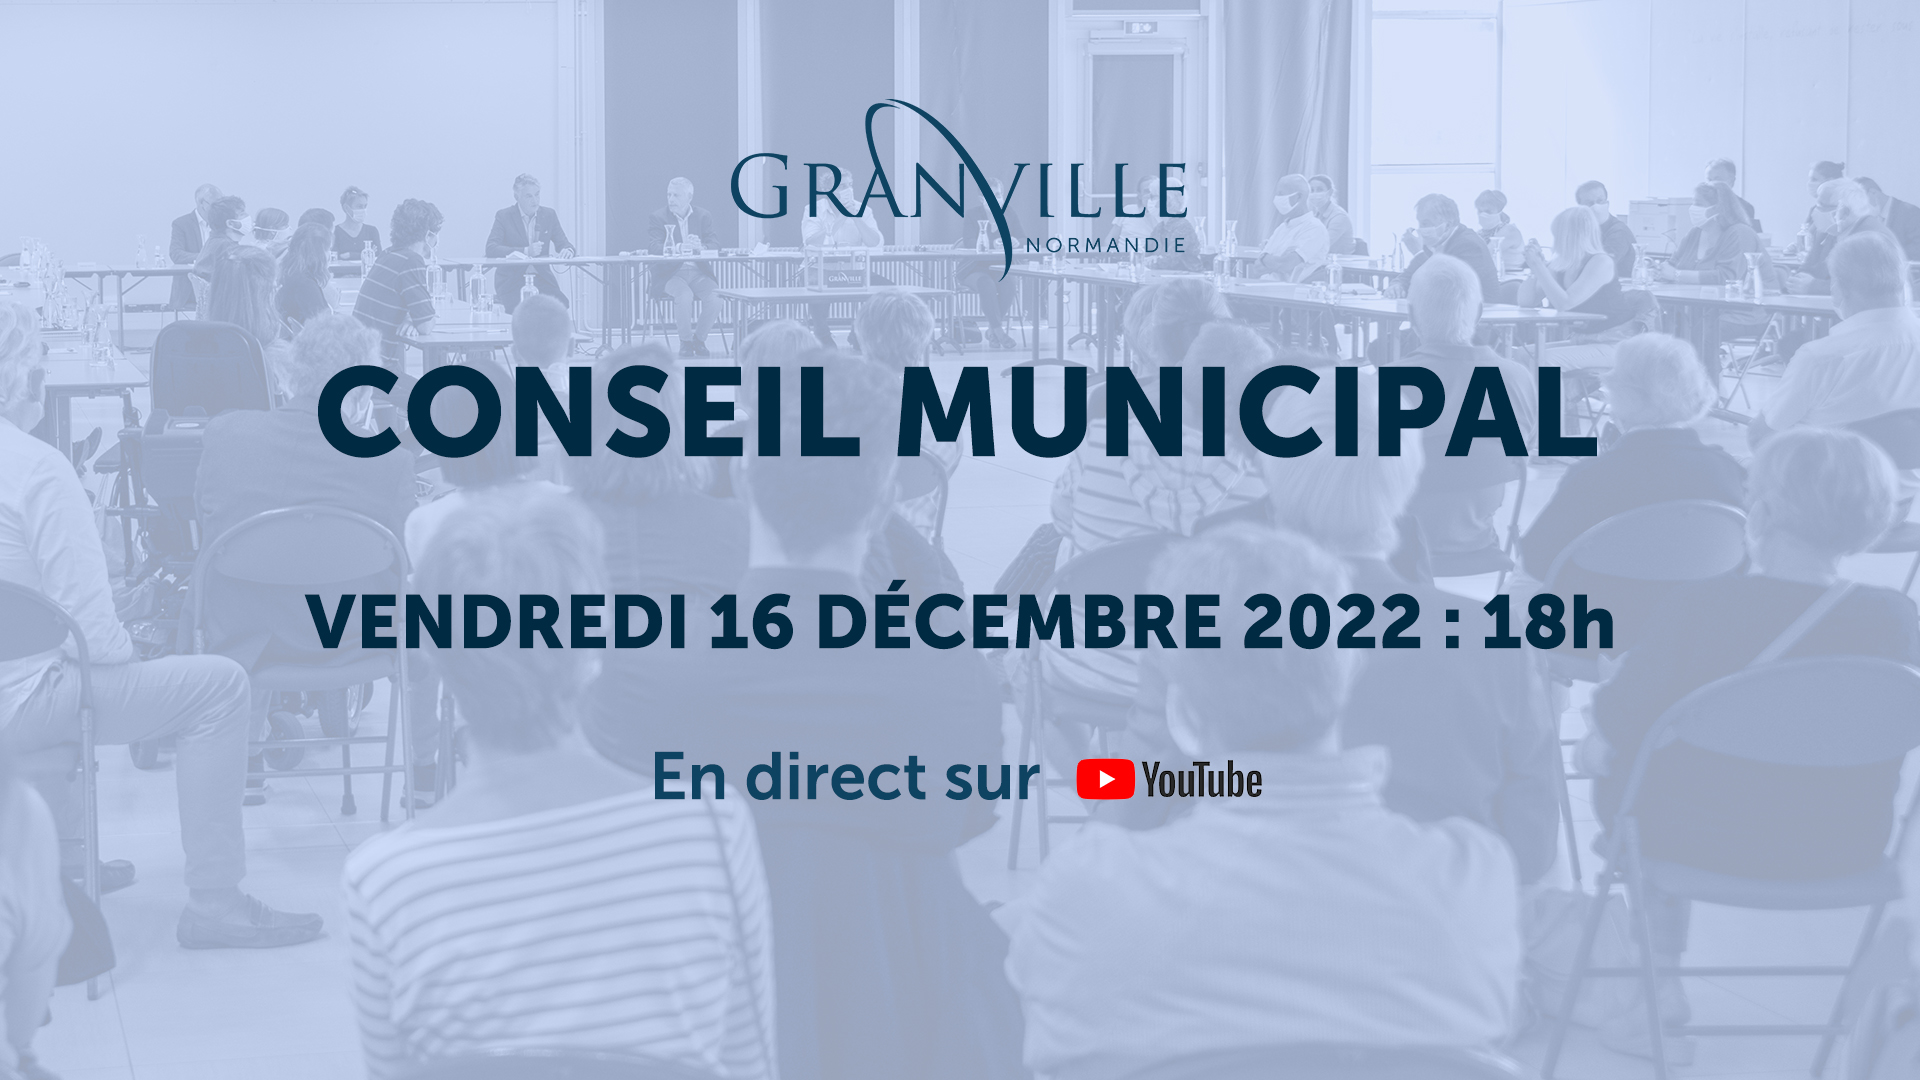 Conseil municipal de Granville du vendredi 16 décembre 2022.